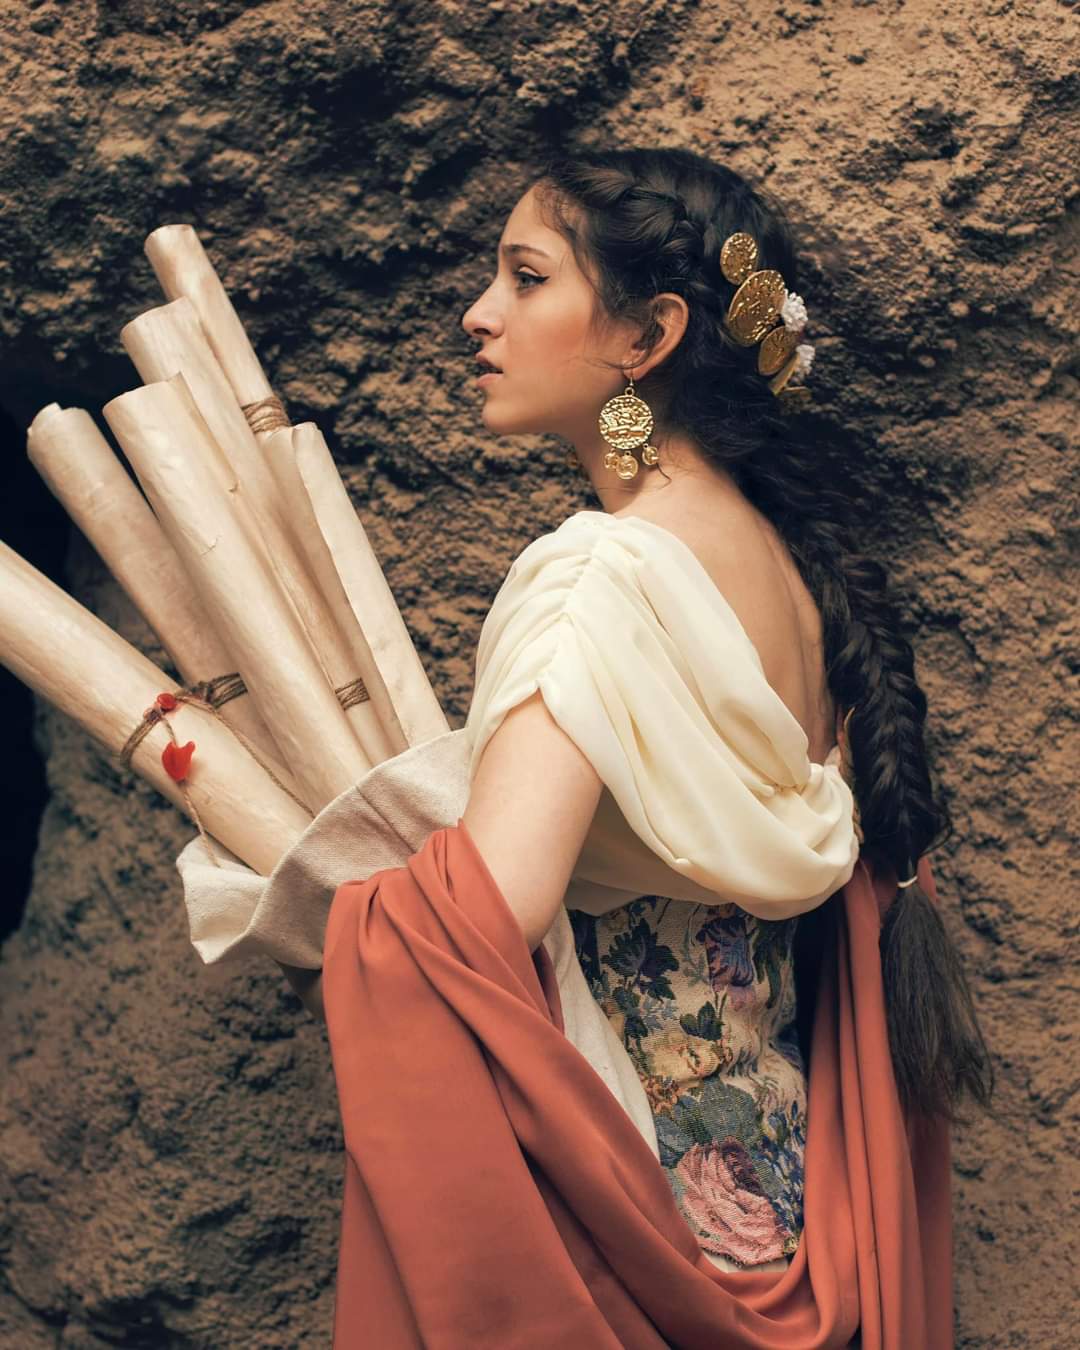 تصميم أزياء مسرحية لشخصيات تاريخية مستوحاه من إحدى الحضارات القديمة (4)